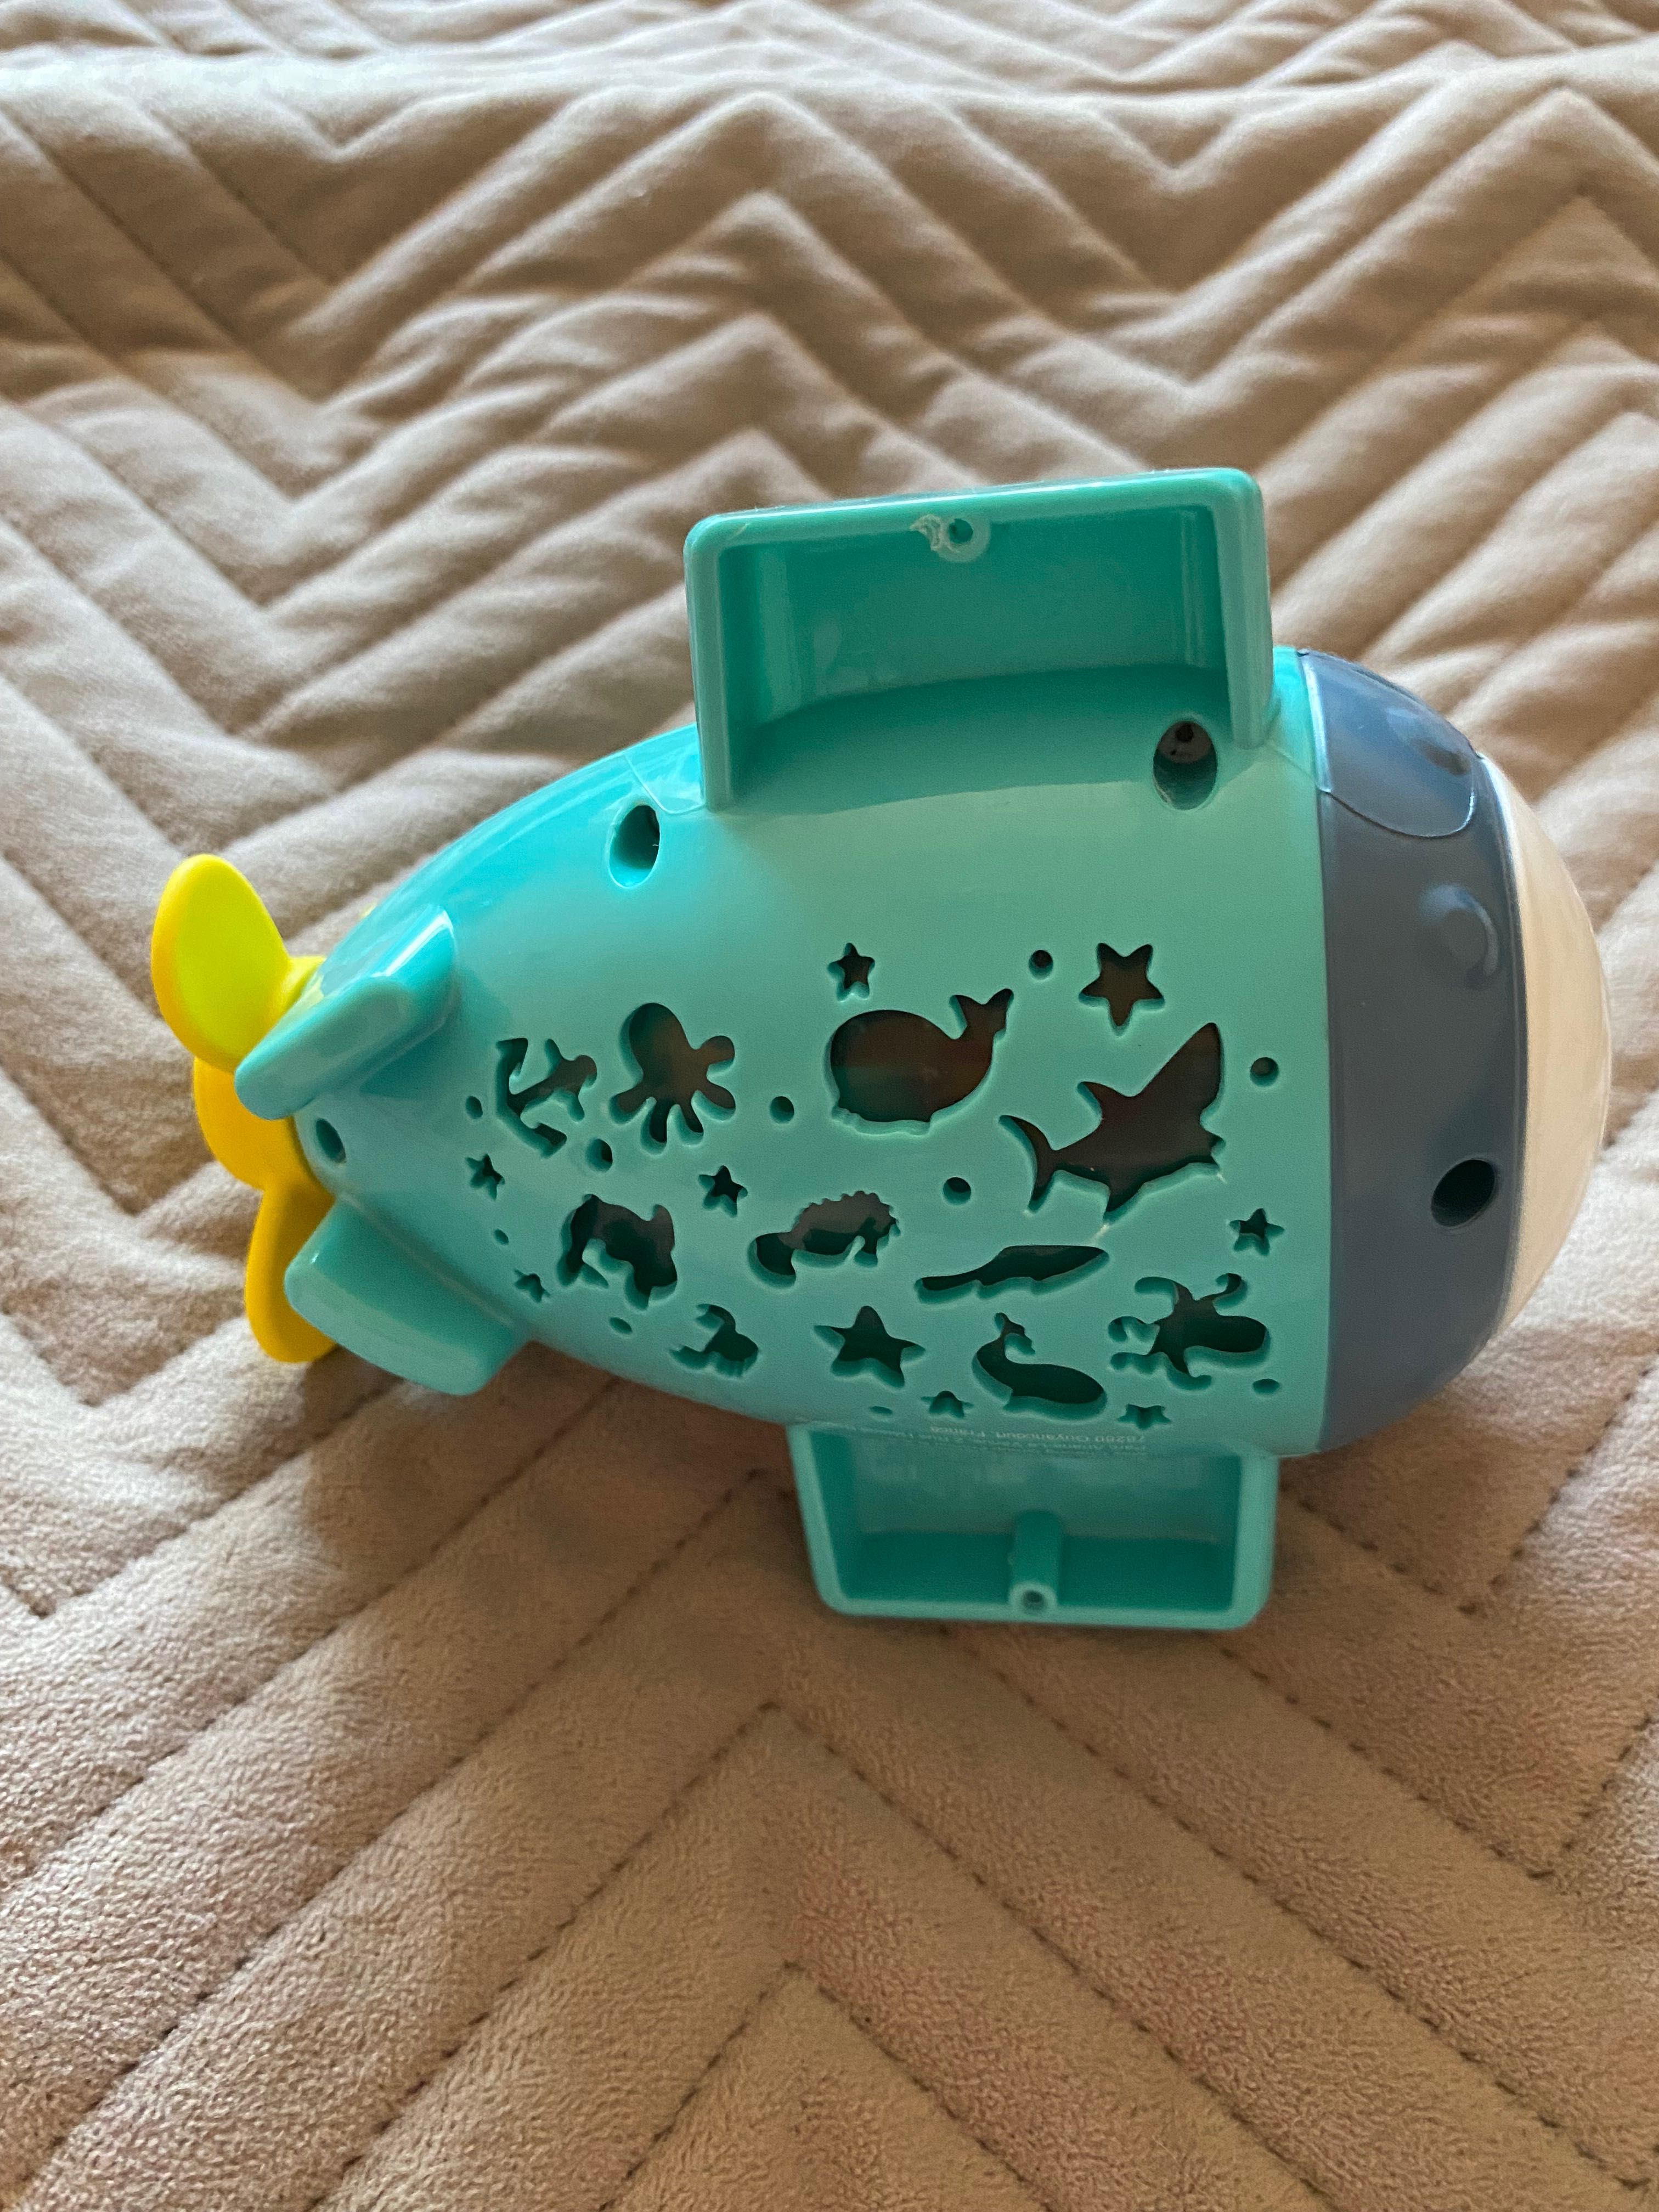 Іграшка для ванної BB Junior Splash 'N Play Підводний човен-проектор